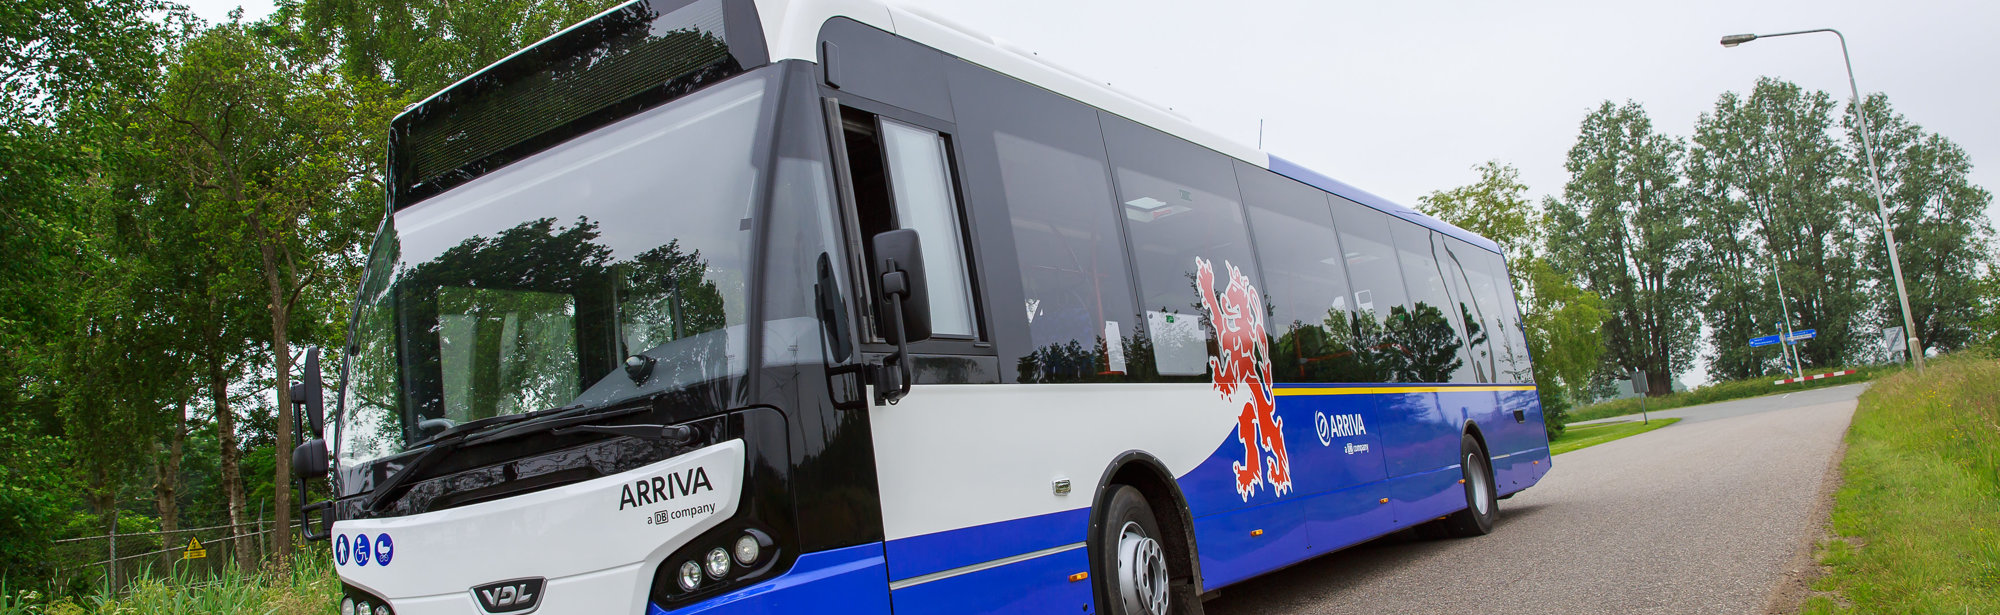 Een blauw witte bus van Arriva